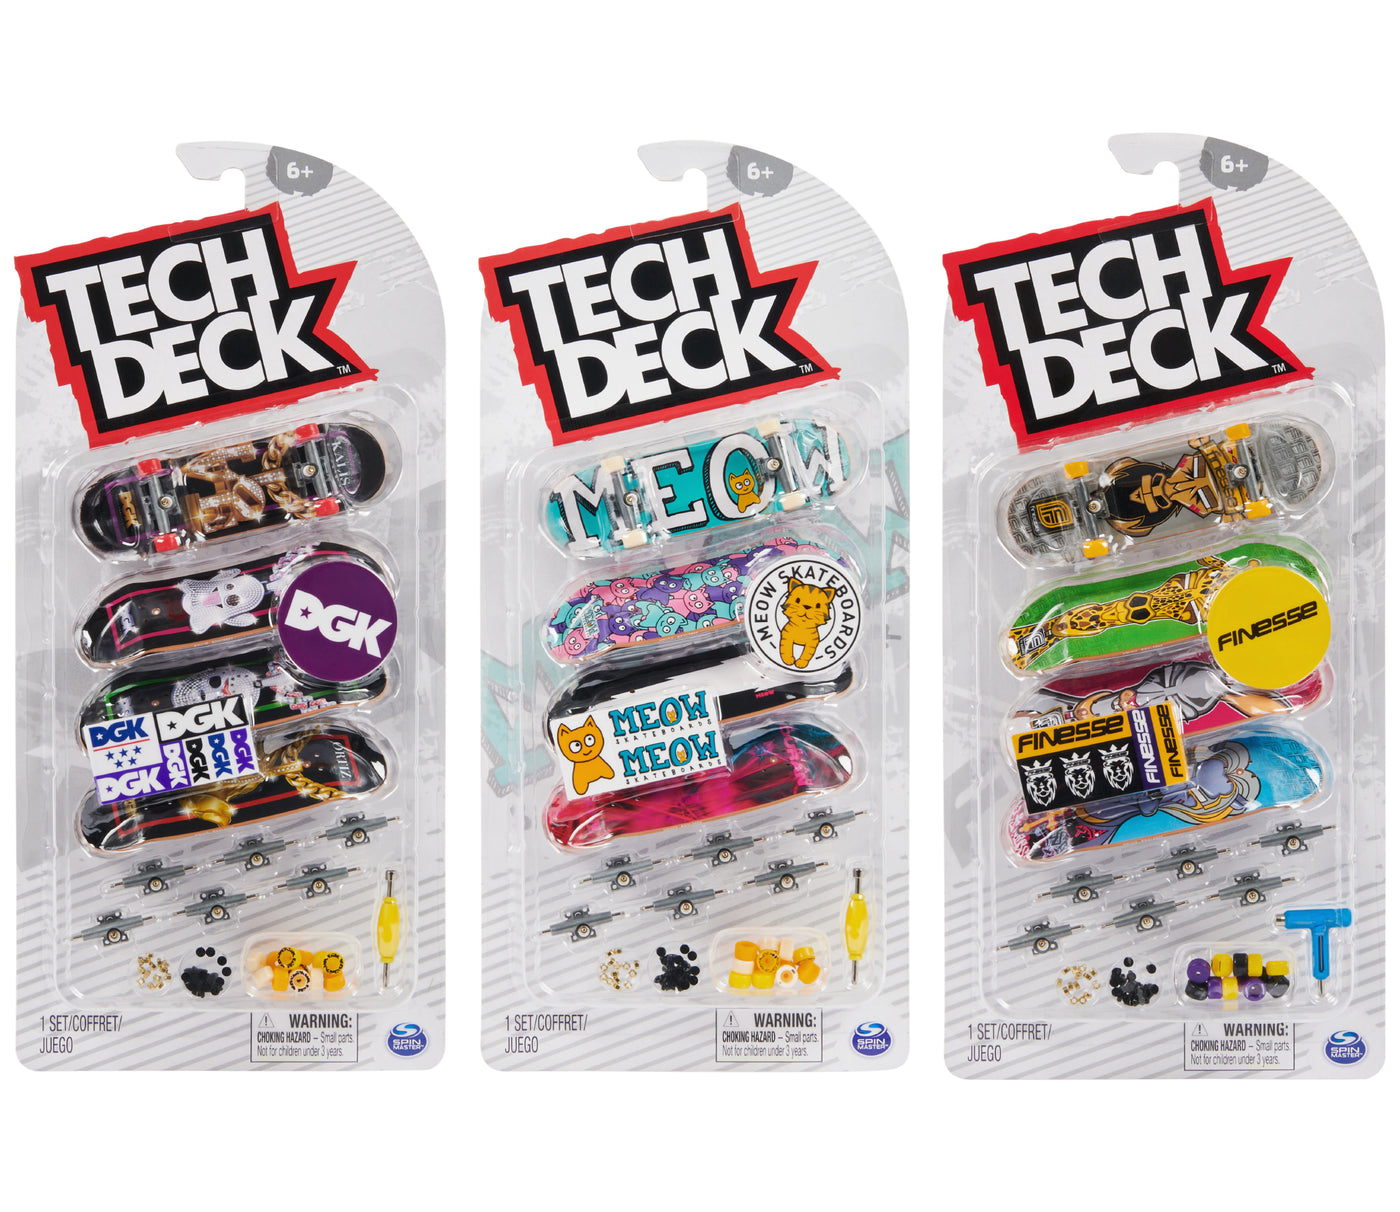 Tech Deck Ultra DLX Fingerboard 4-Pack